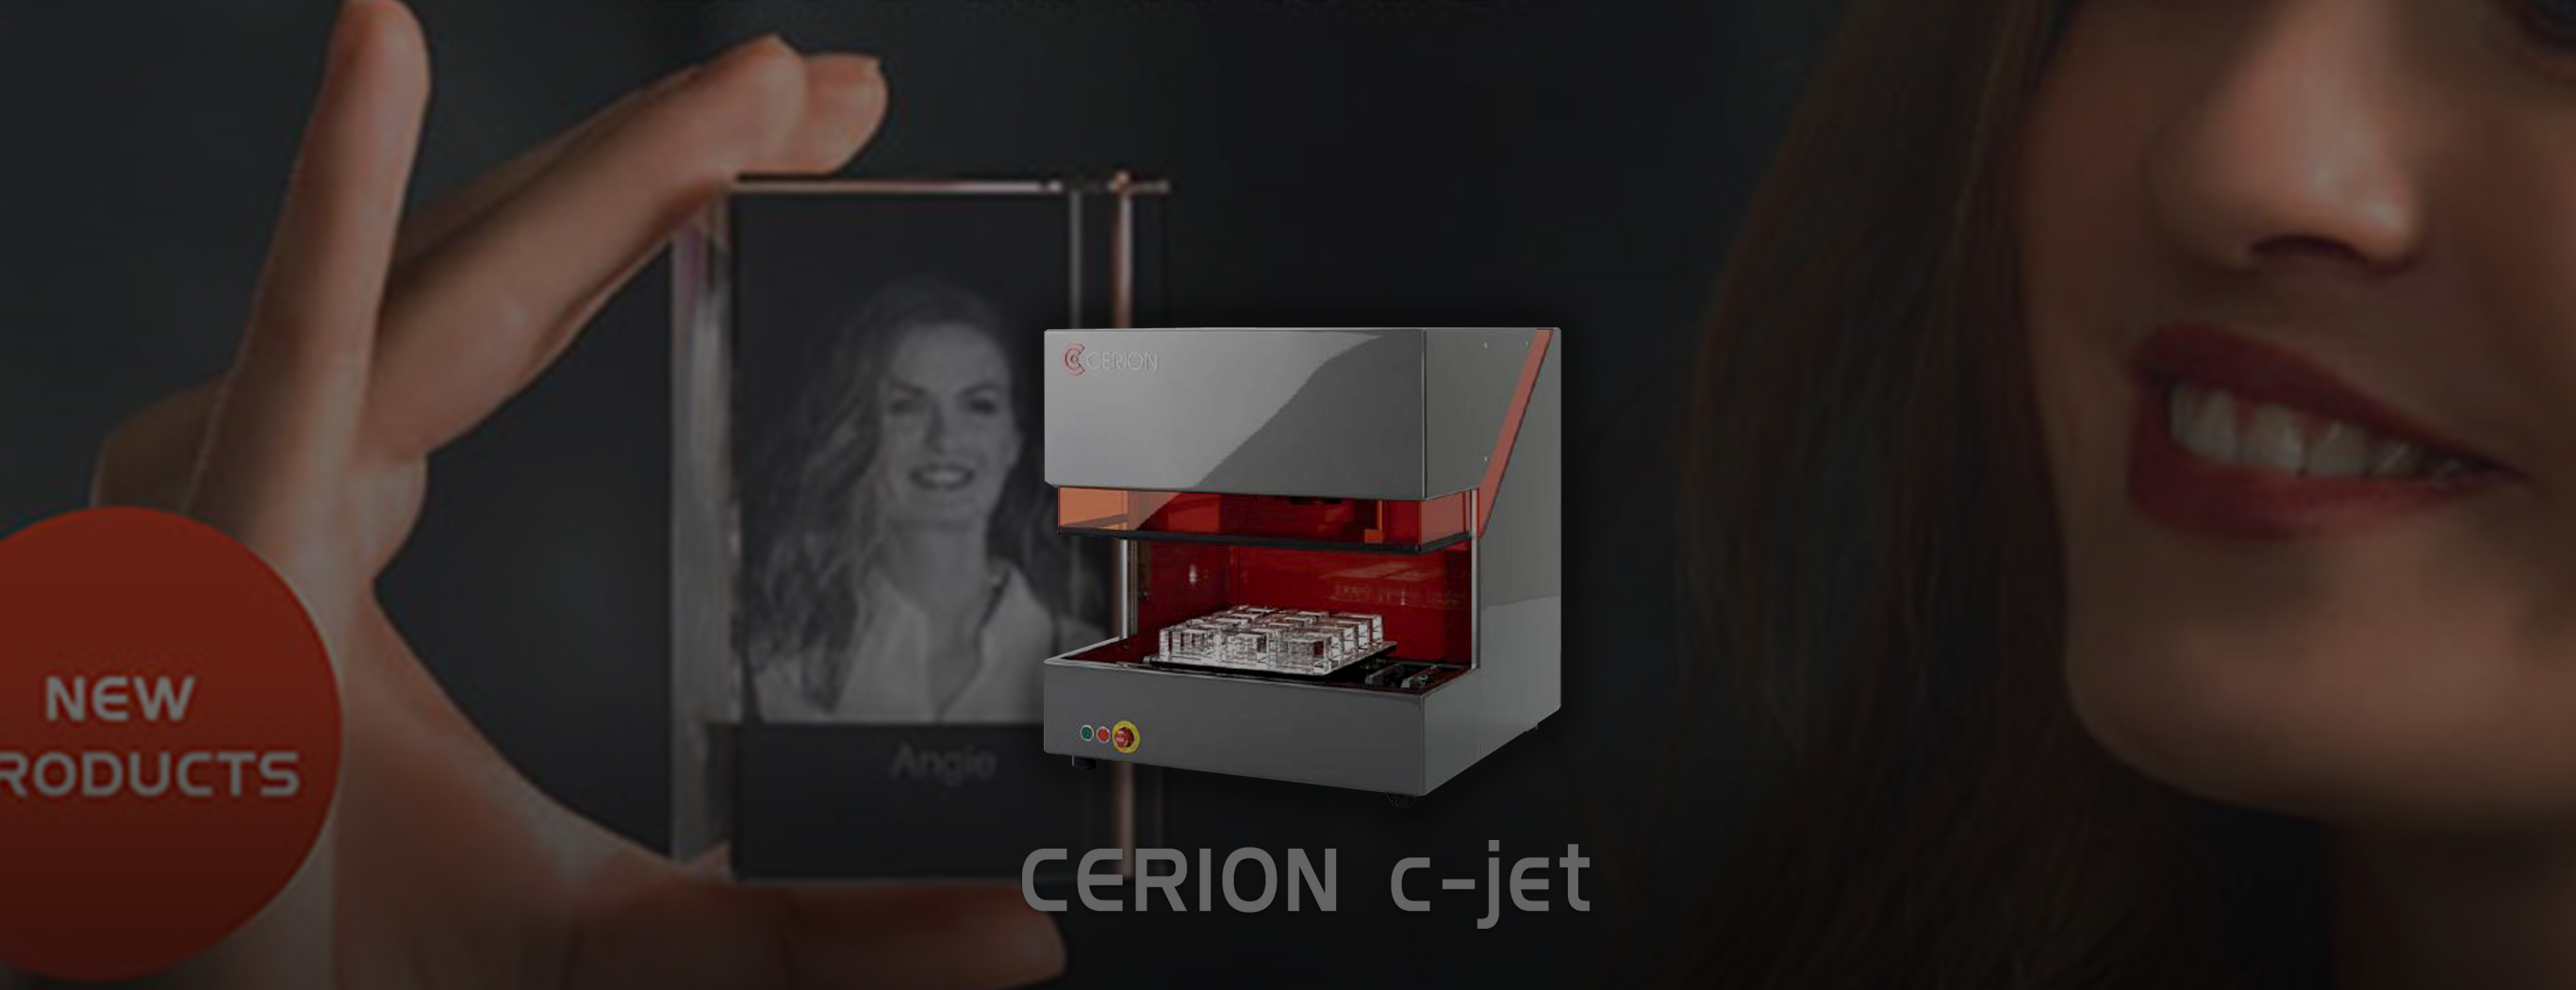 販売終了 3dクリスタルレーザー Cerion レーザー加工機 レーザーカッター販売実績4 500台の国内トップシェア コムネット